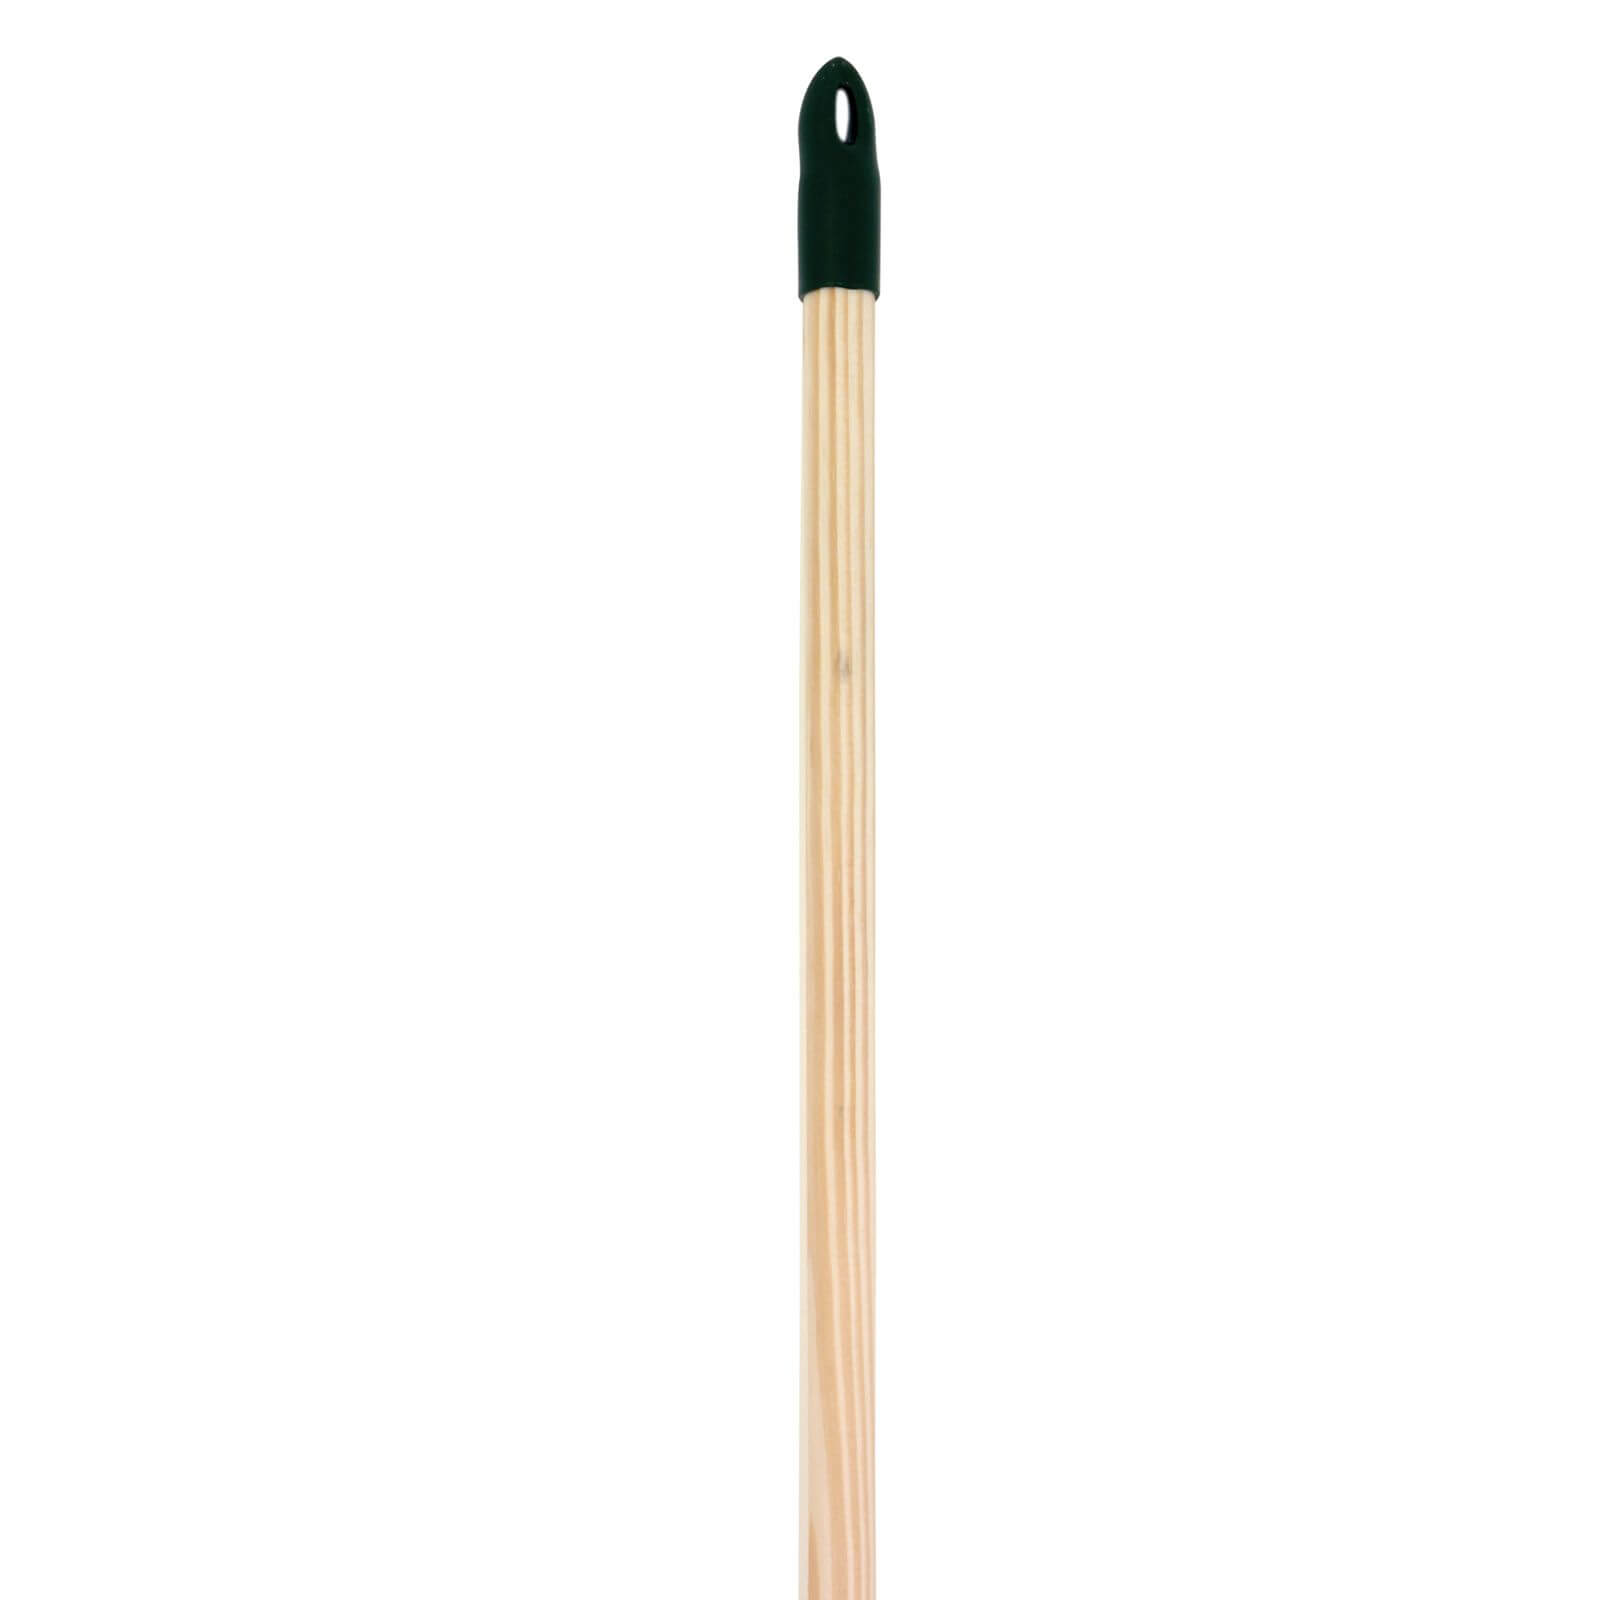 Photo of Master Gardener Standard Wooden Broom Handle - 1.2m